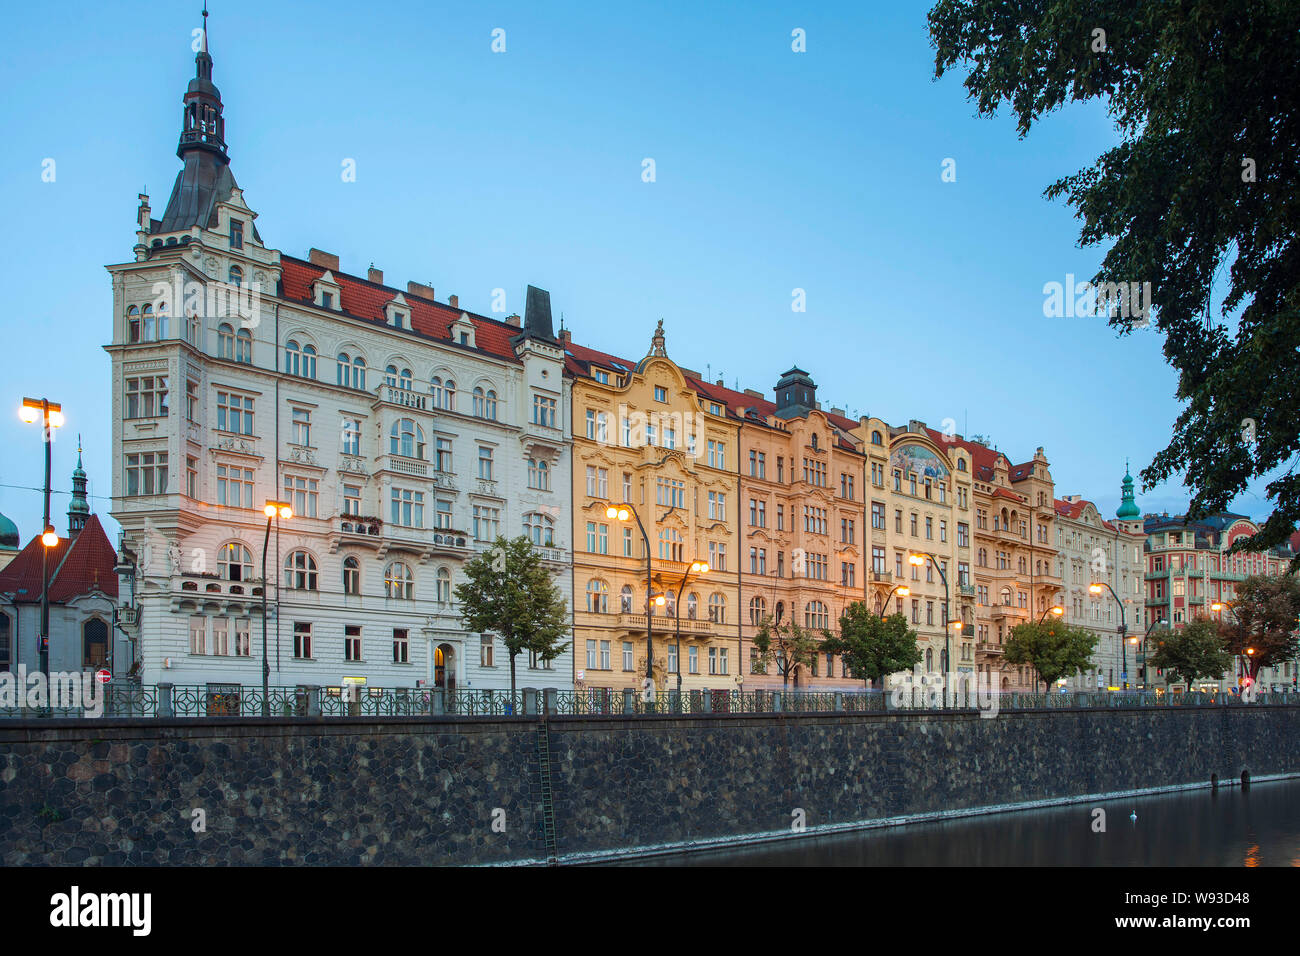 Dämmerung Blick auf Gebäude säumen auf Masarykovo Nábřeží am Ufer der Moldau in Prag, Tschechische Republik. Stockfoto